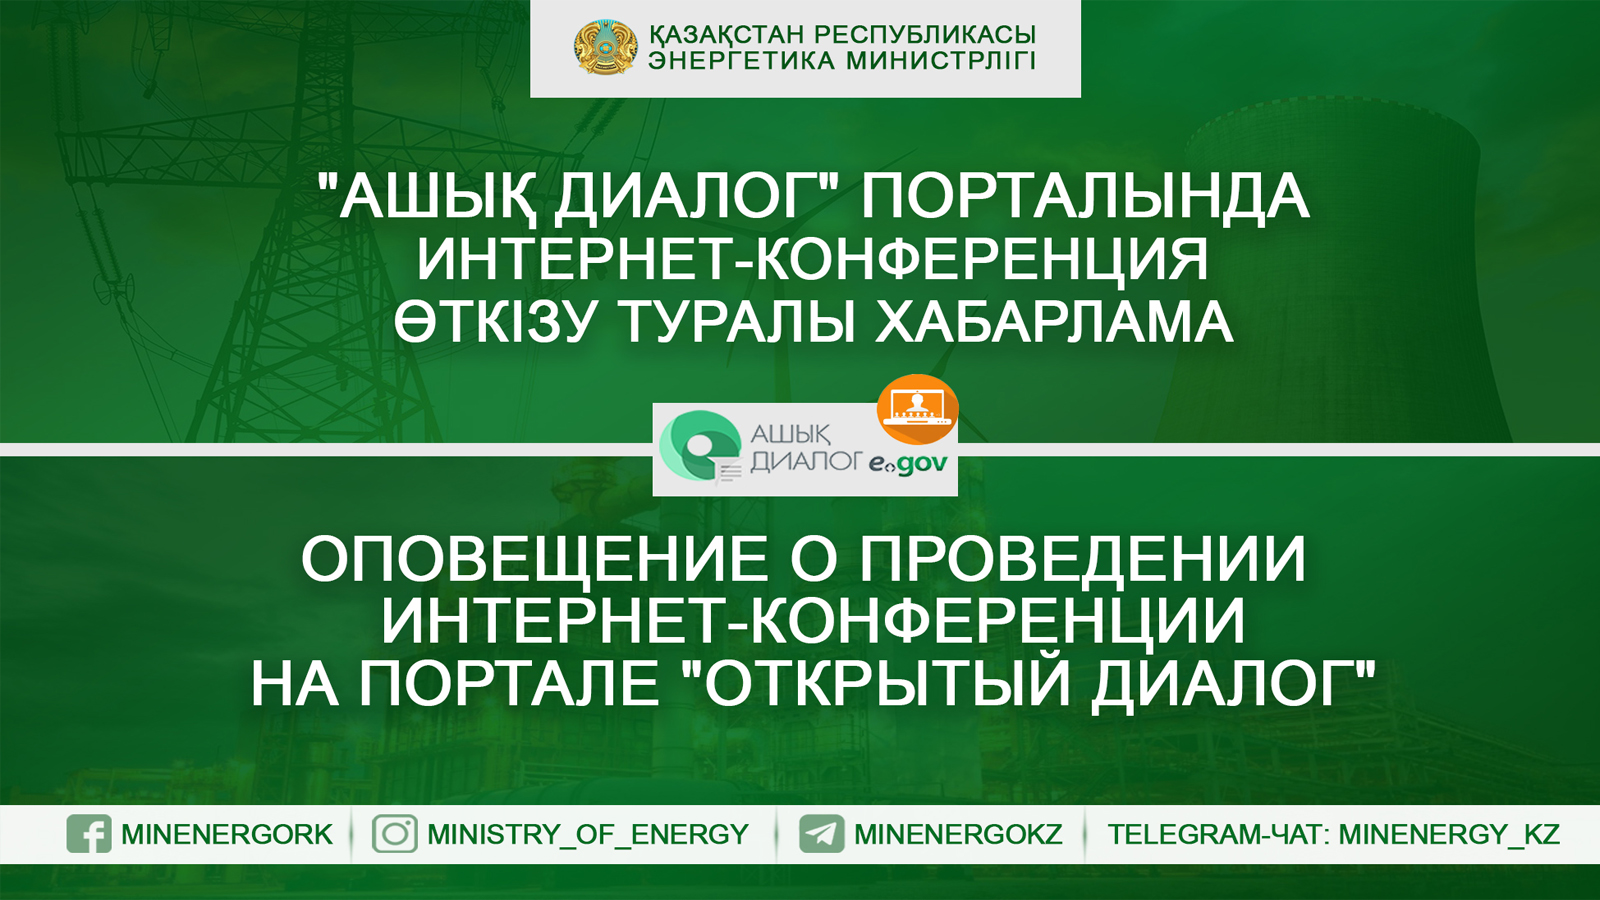 Министерство энергетики РК  на портале «Открытый диалог» проводит интернет-конференцию «Цены на ГСМ»